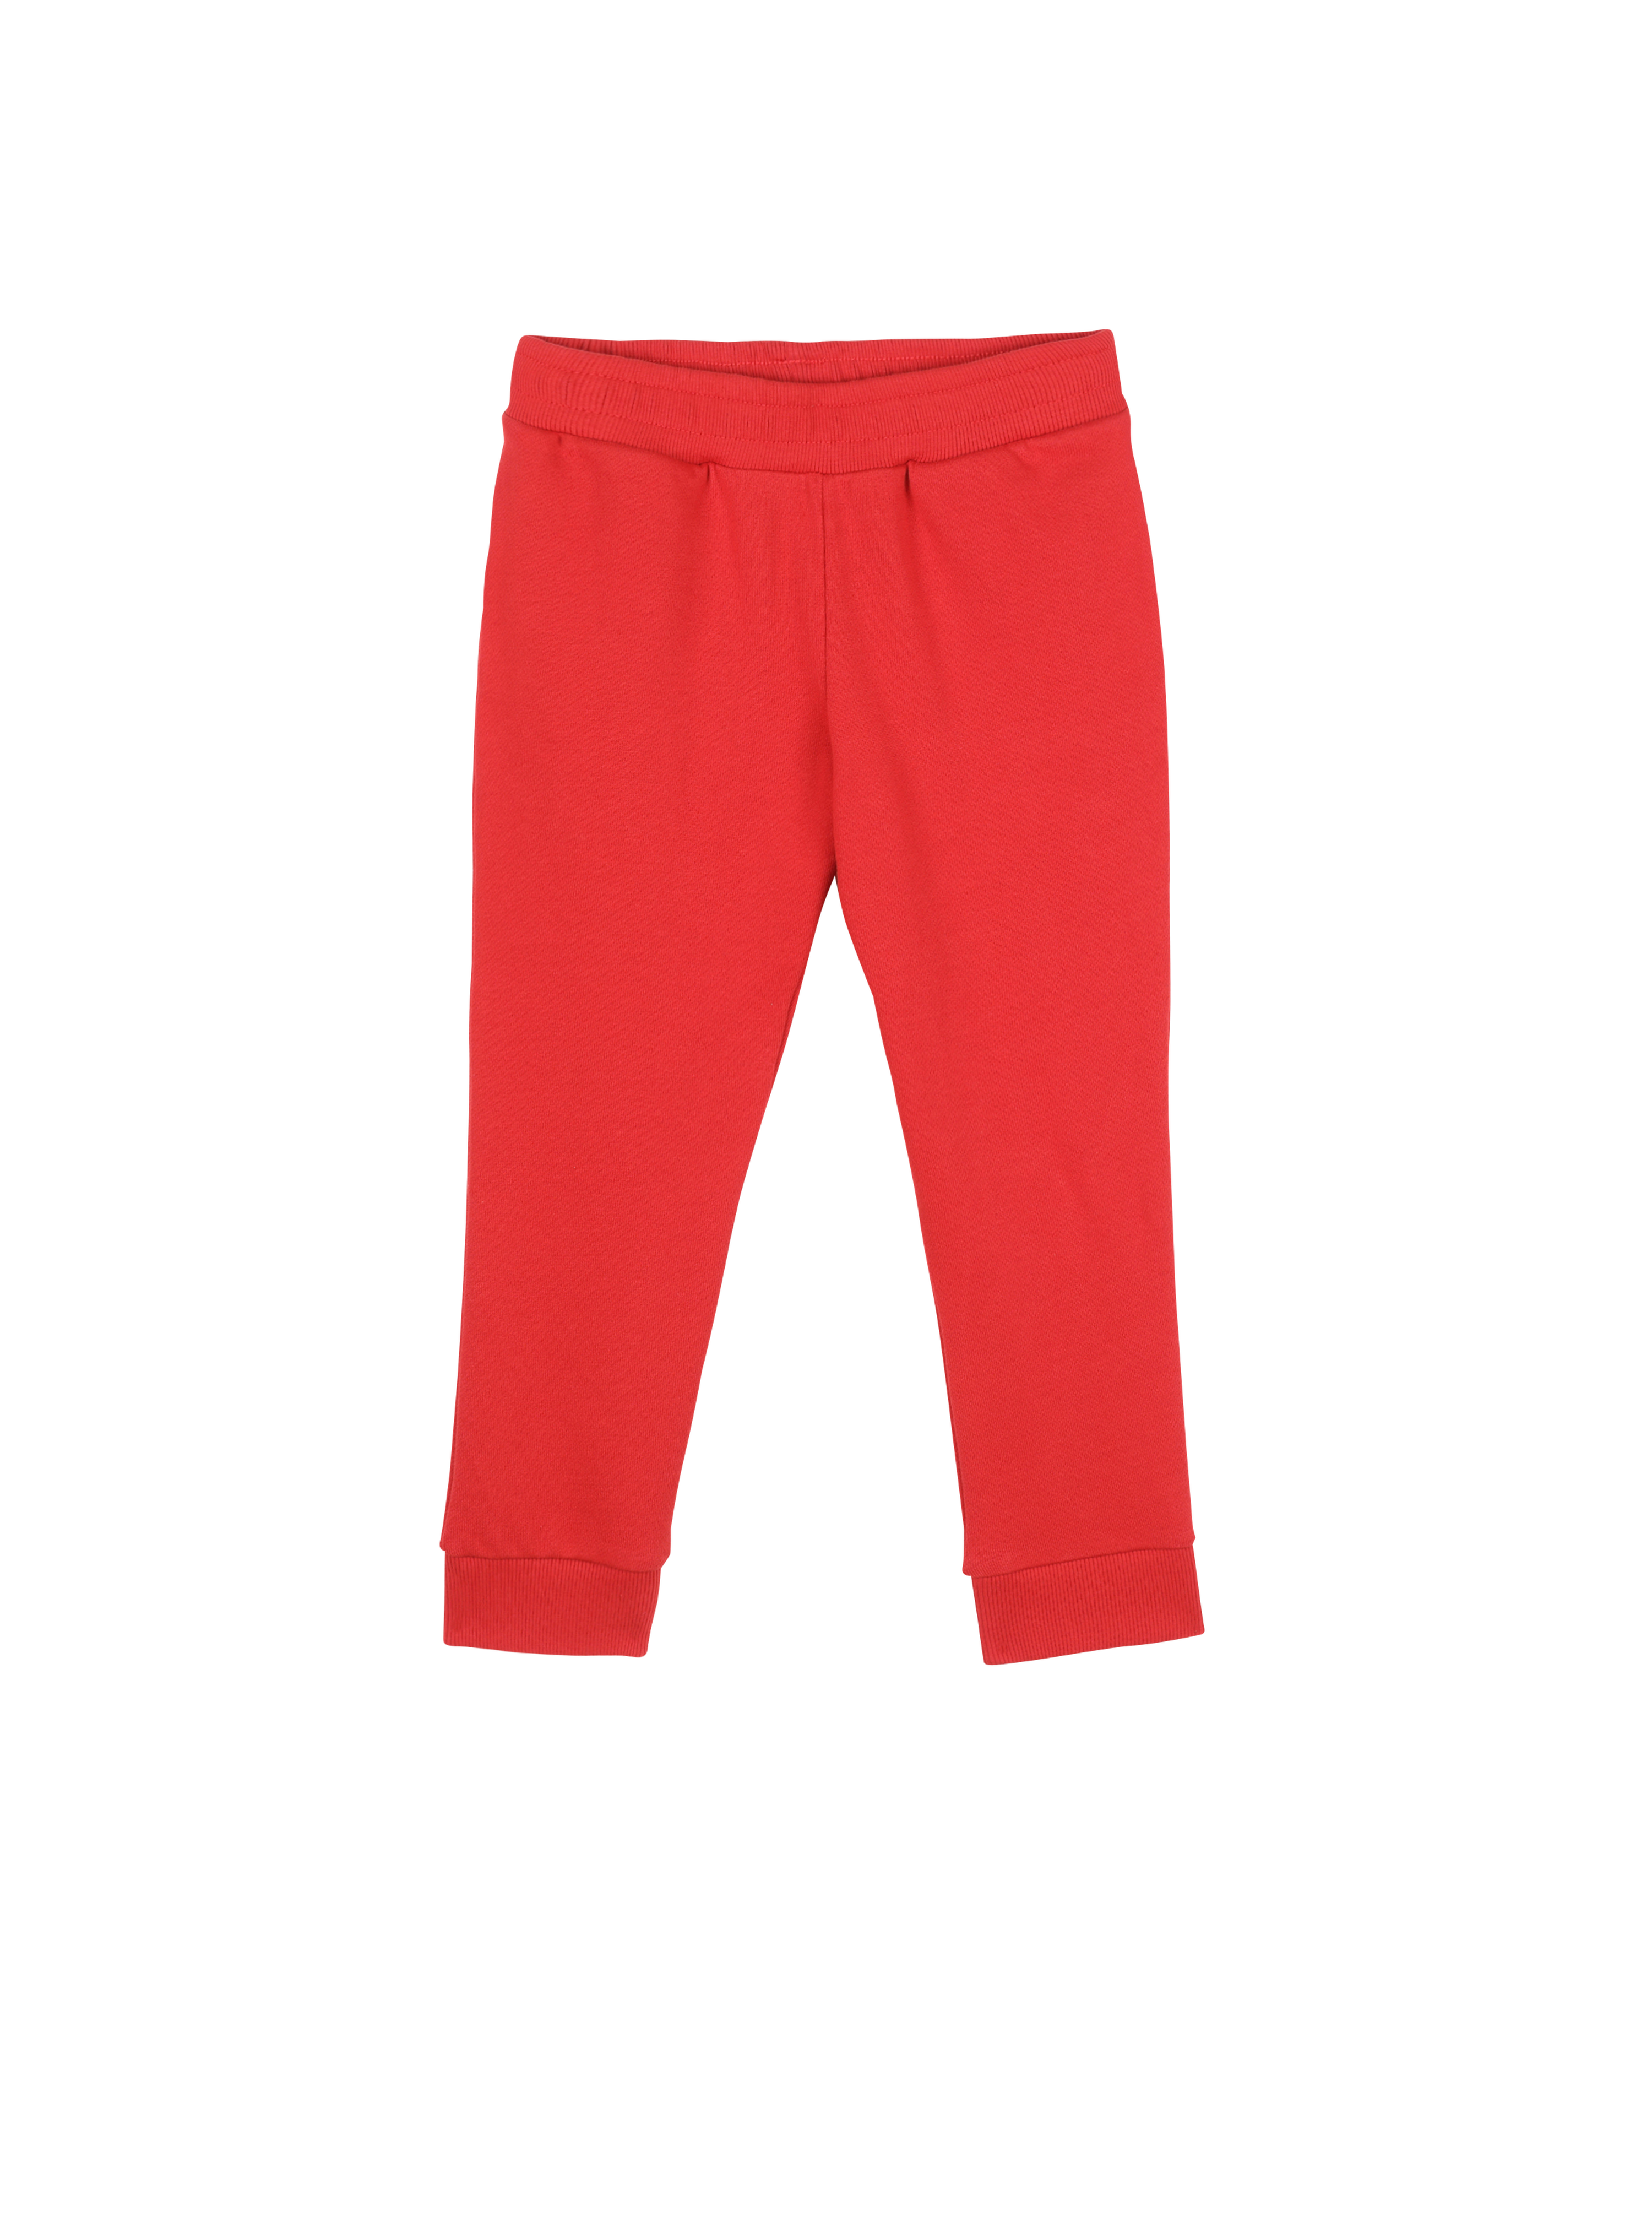 バルマンロゴ入りのコットン製ジョギングパンツ, 赤